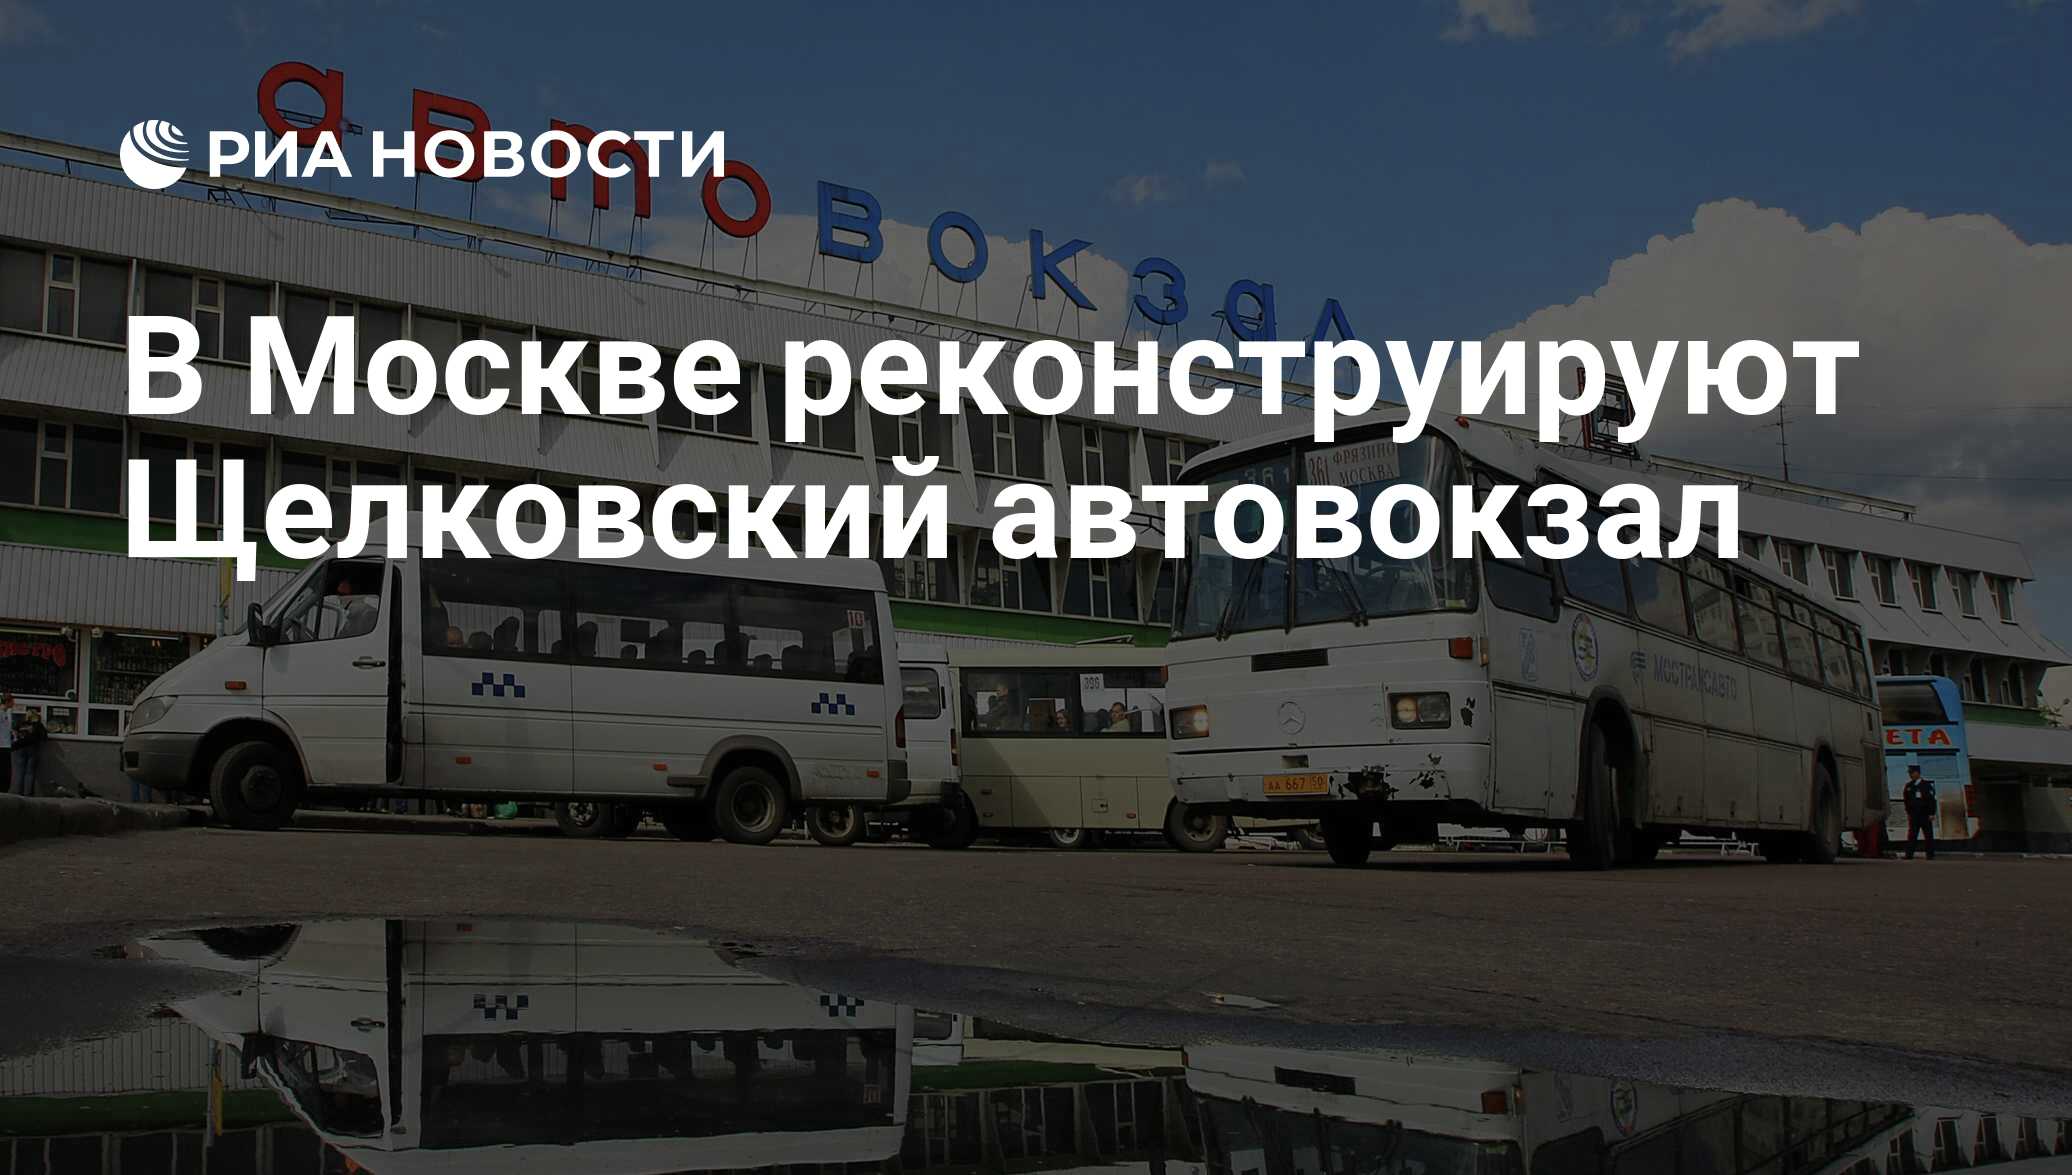 Сайт щелковского автовокзала москва